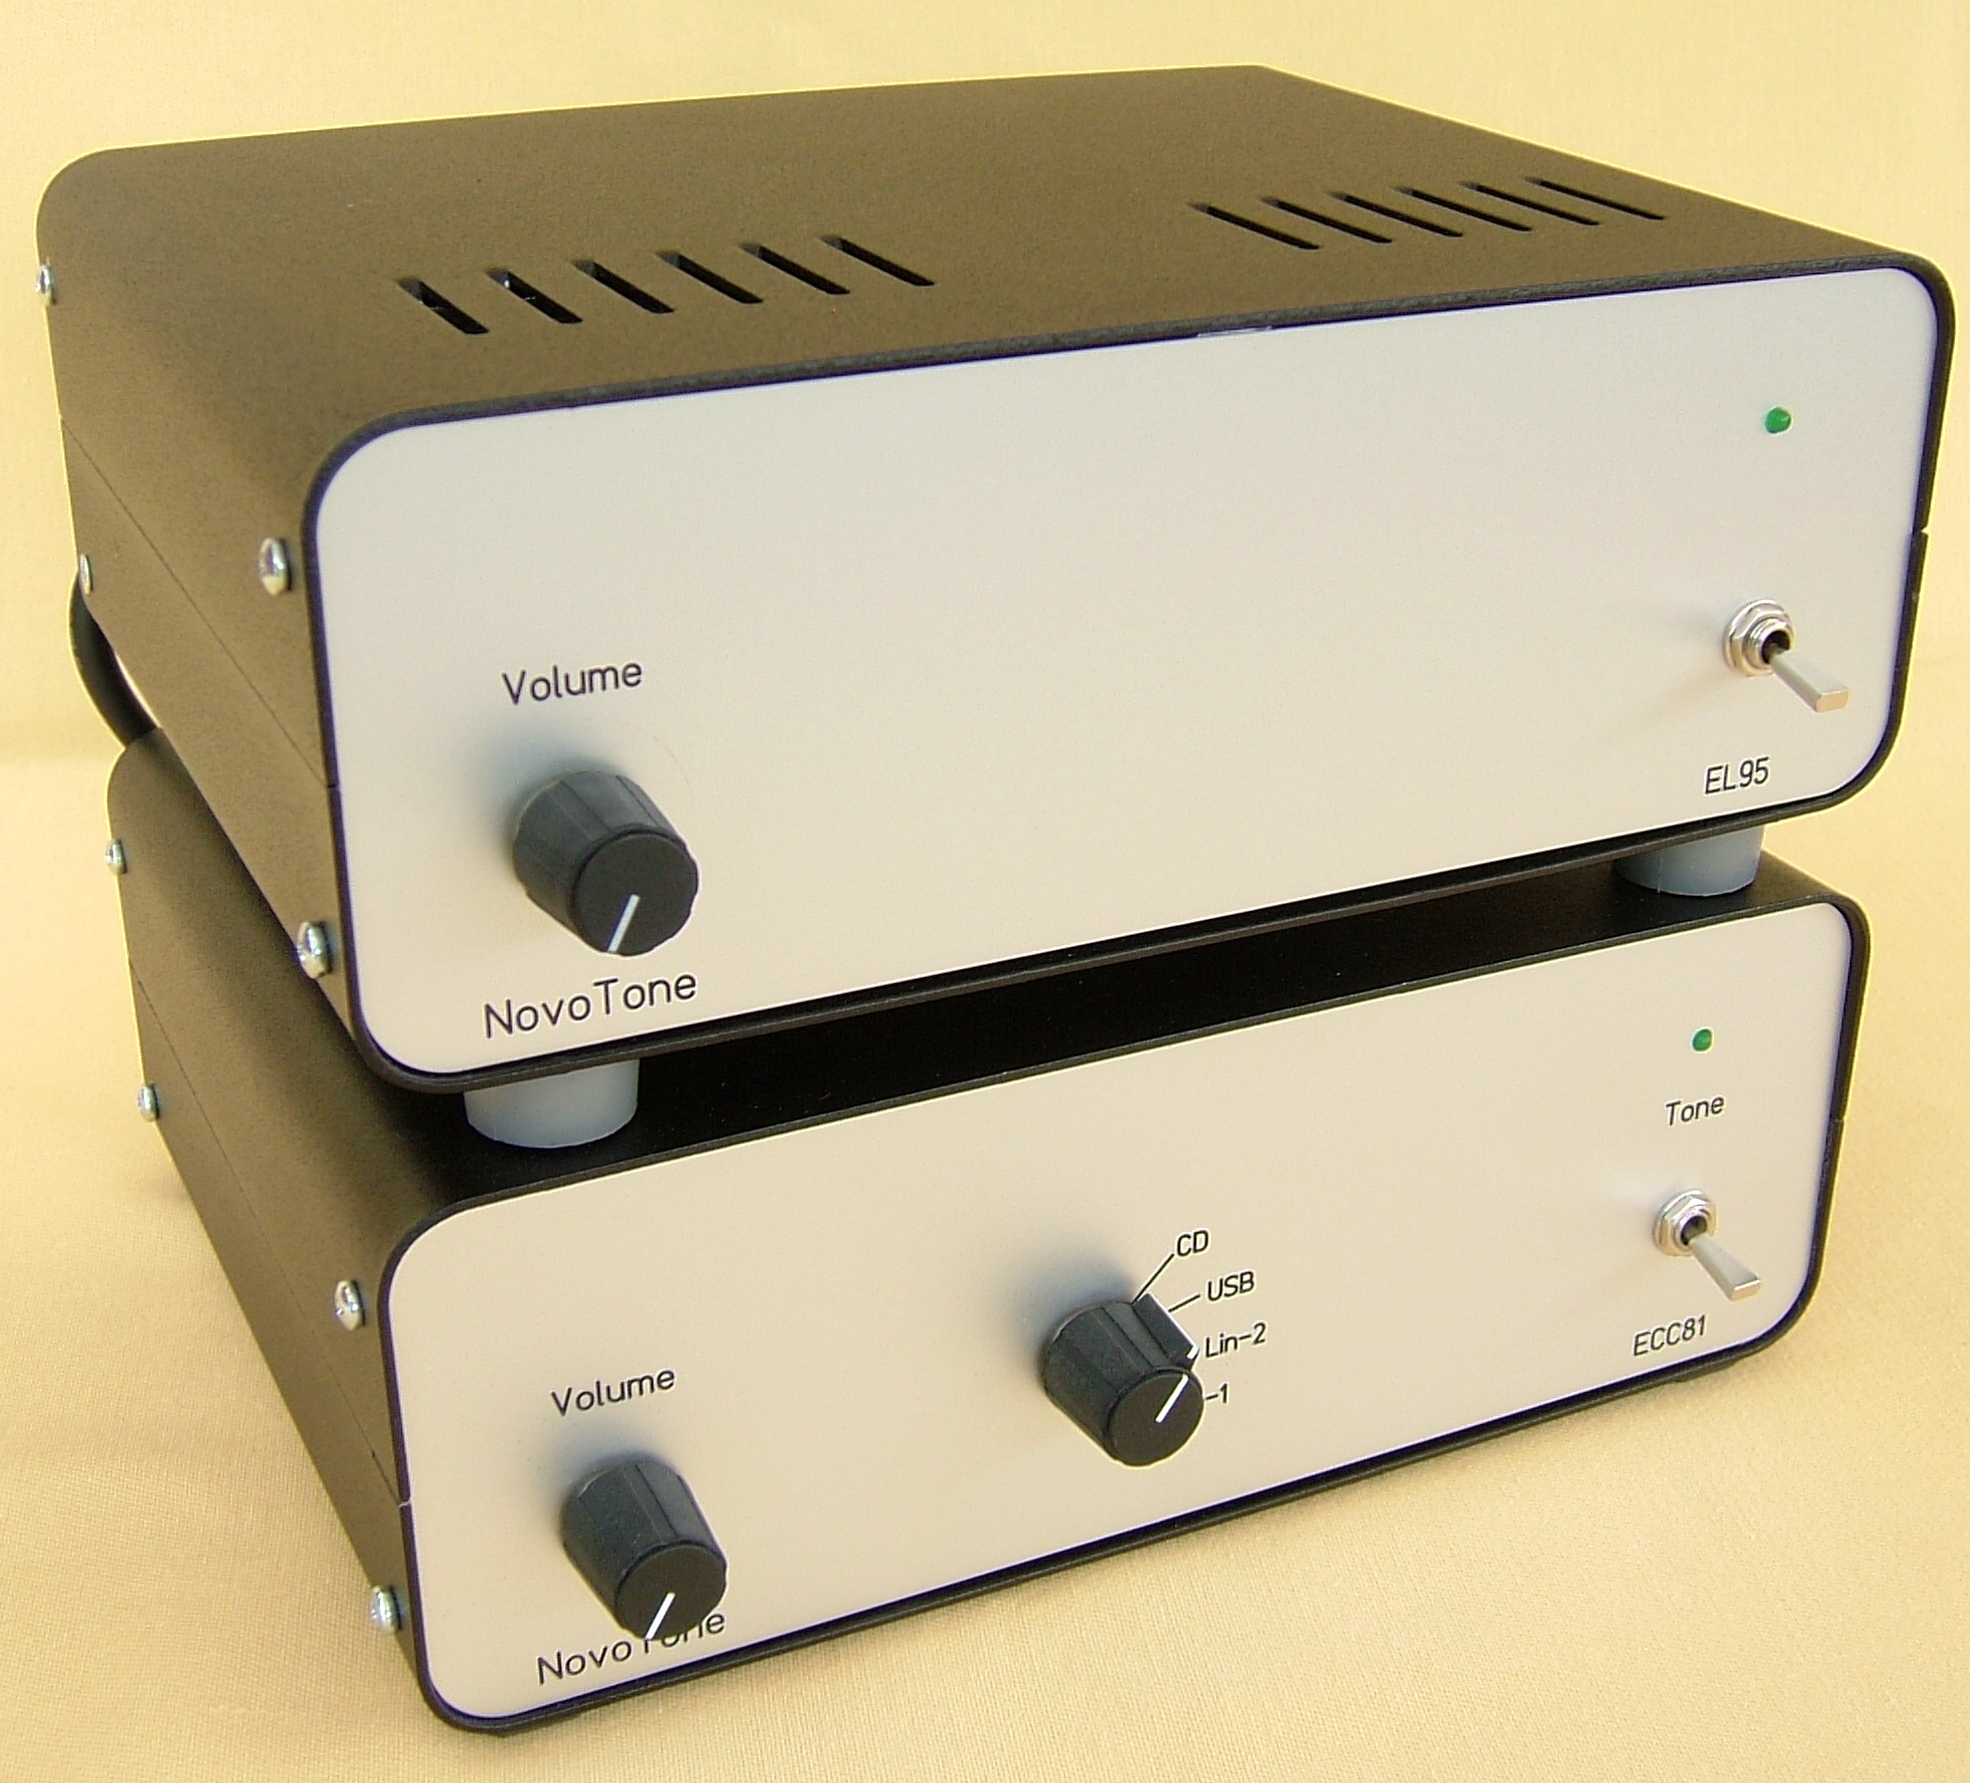 NovoTone - Mini Amplificateur 2X4W - PP de EL95 - Préamplificateur ECC81 + DAC USB - S/PDIF